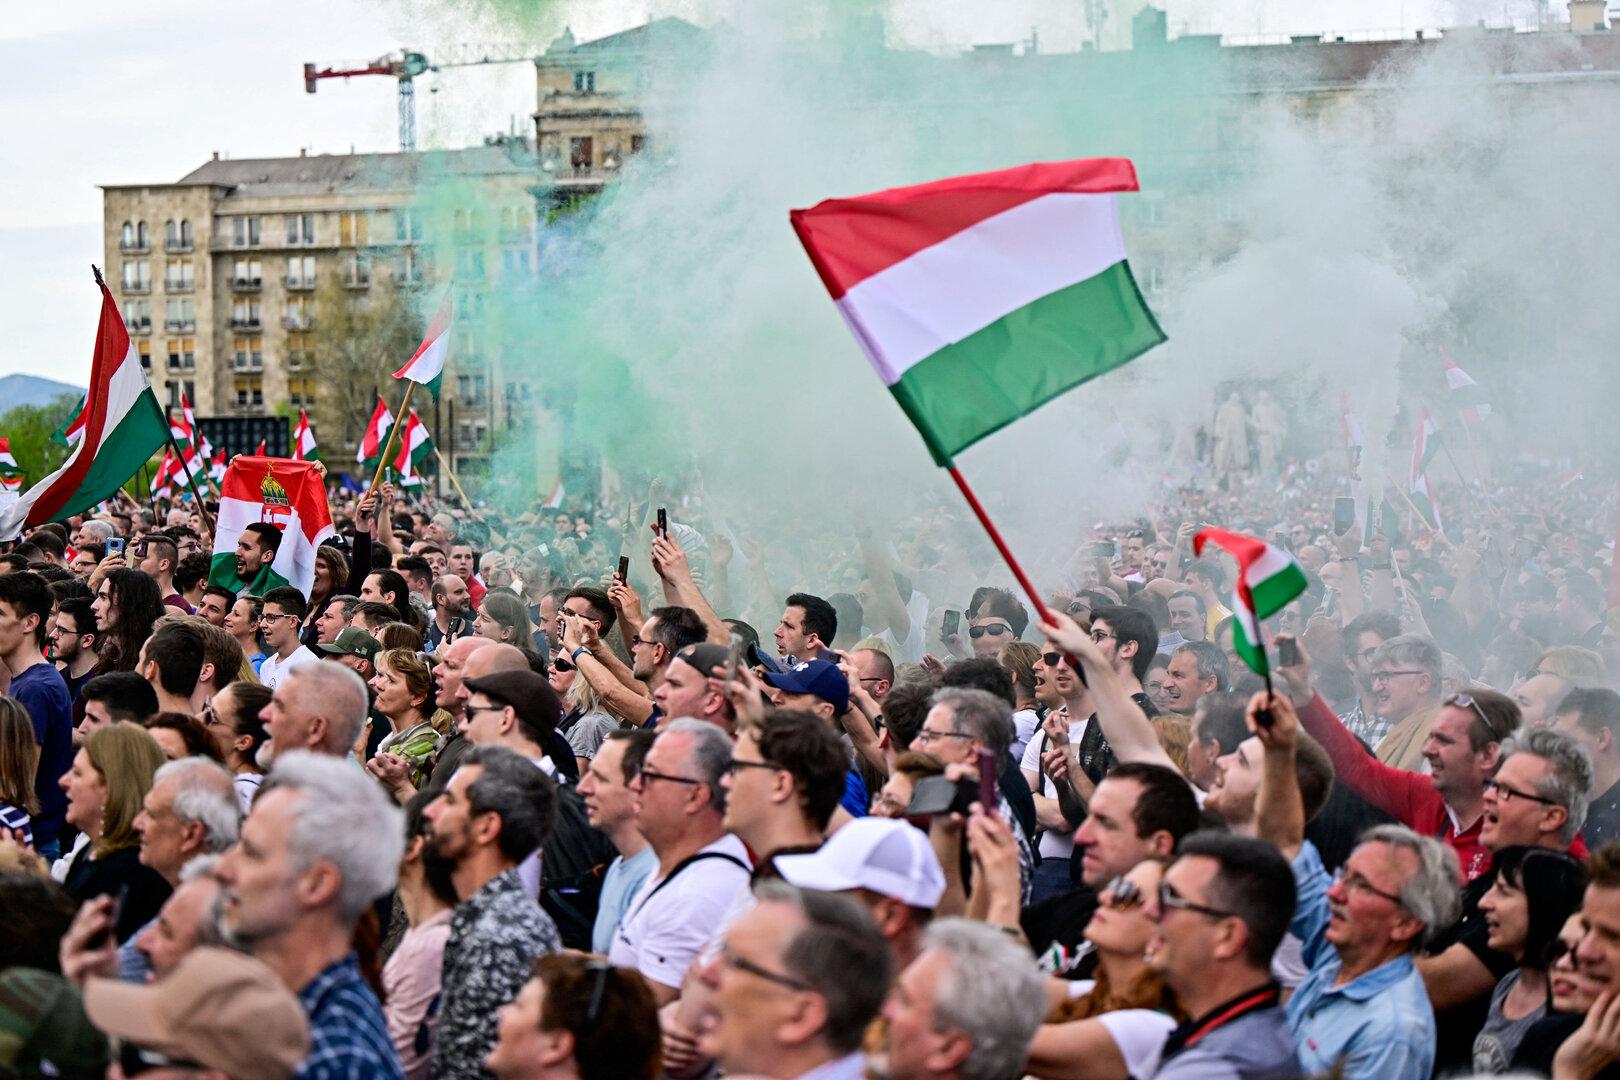 Magyar attackiert Orbán: Hunderttausende demonstrierten in Budapest